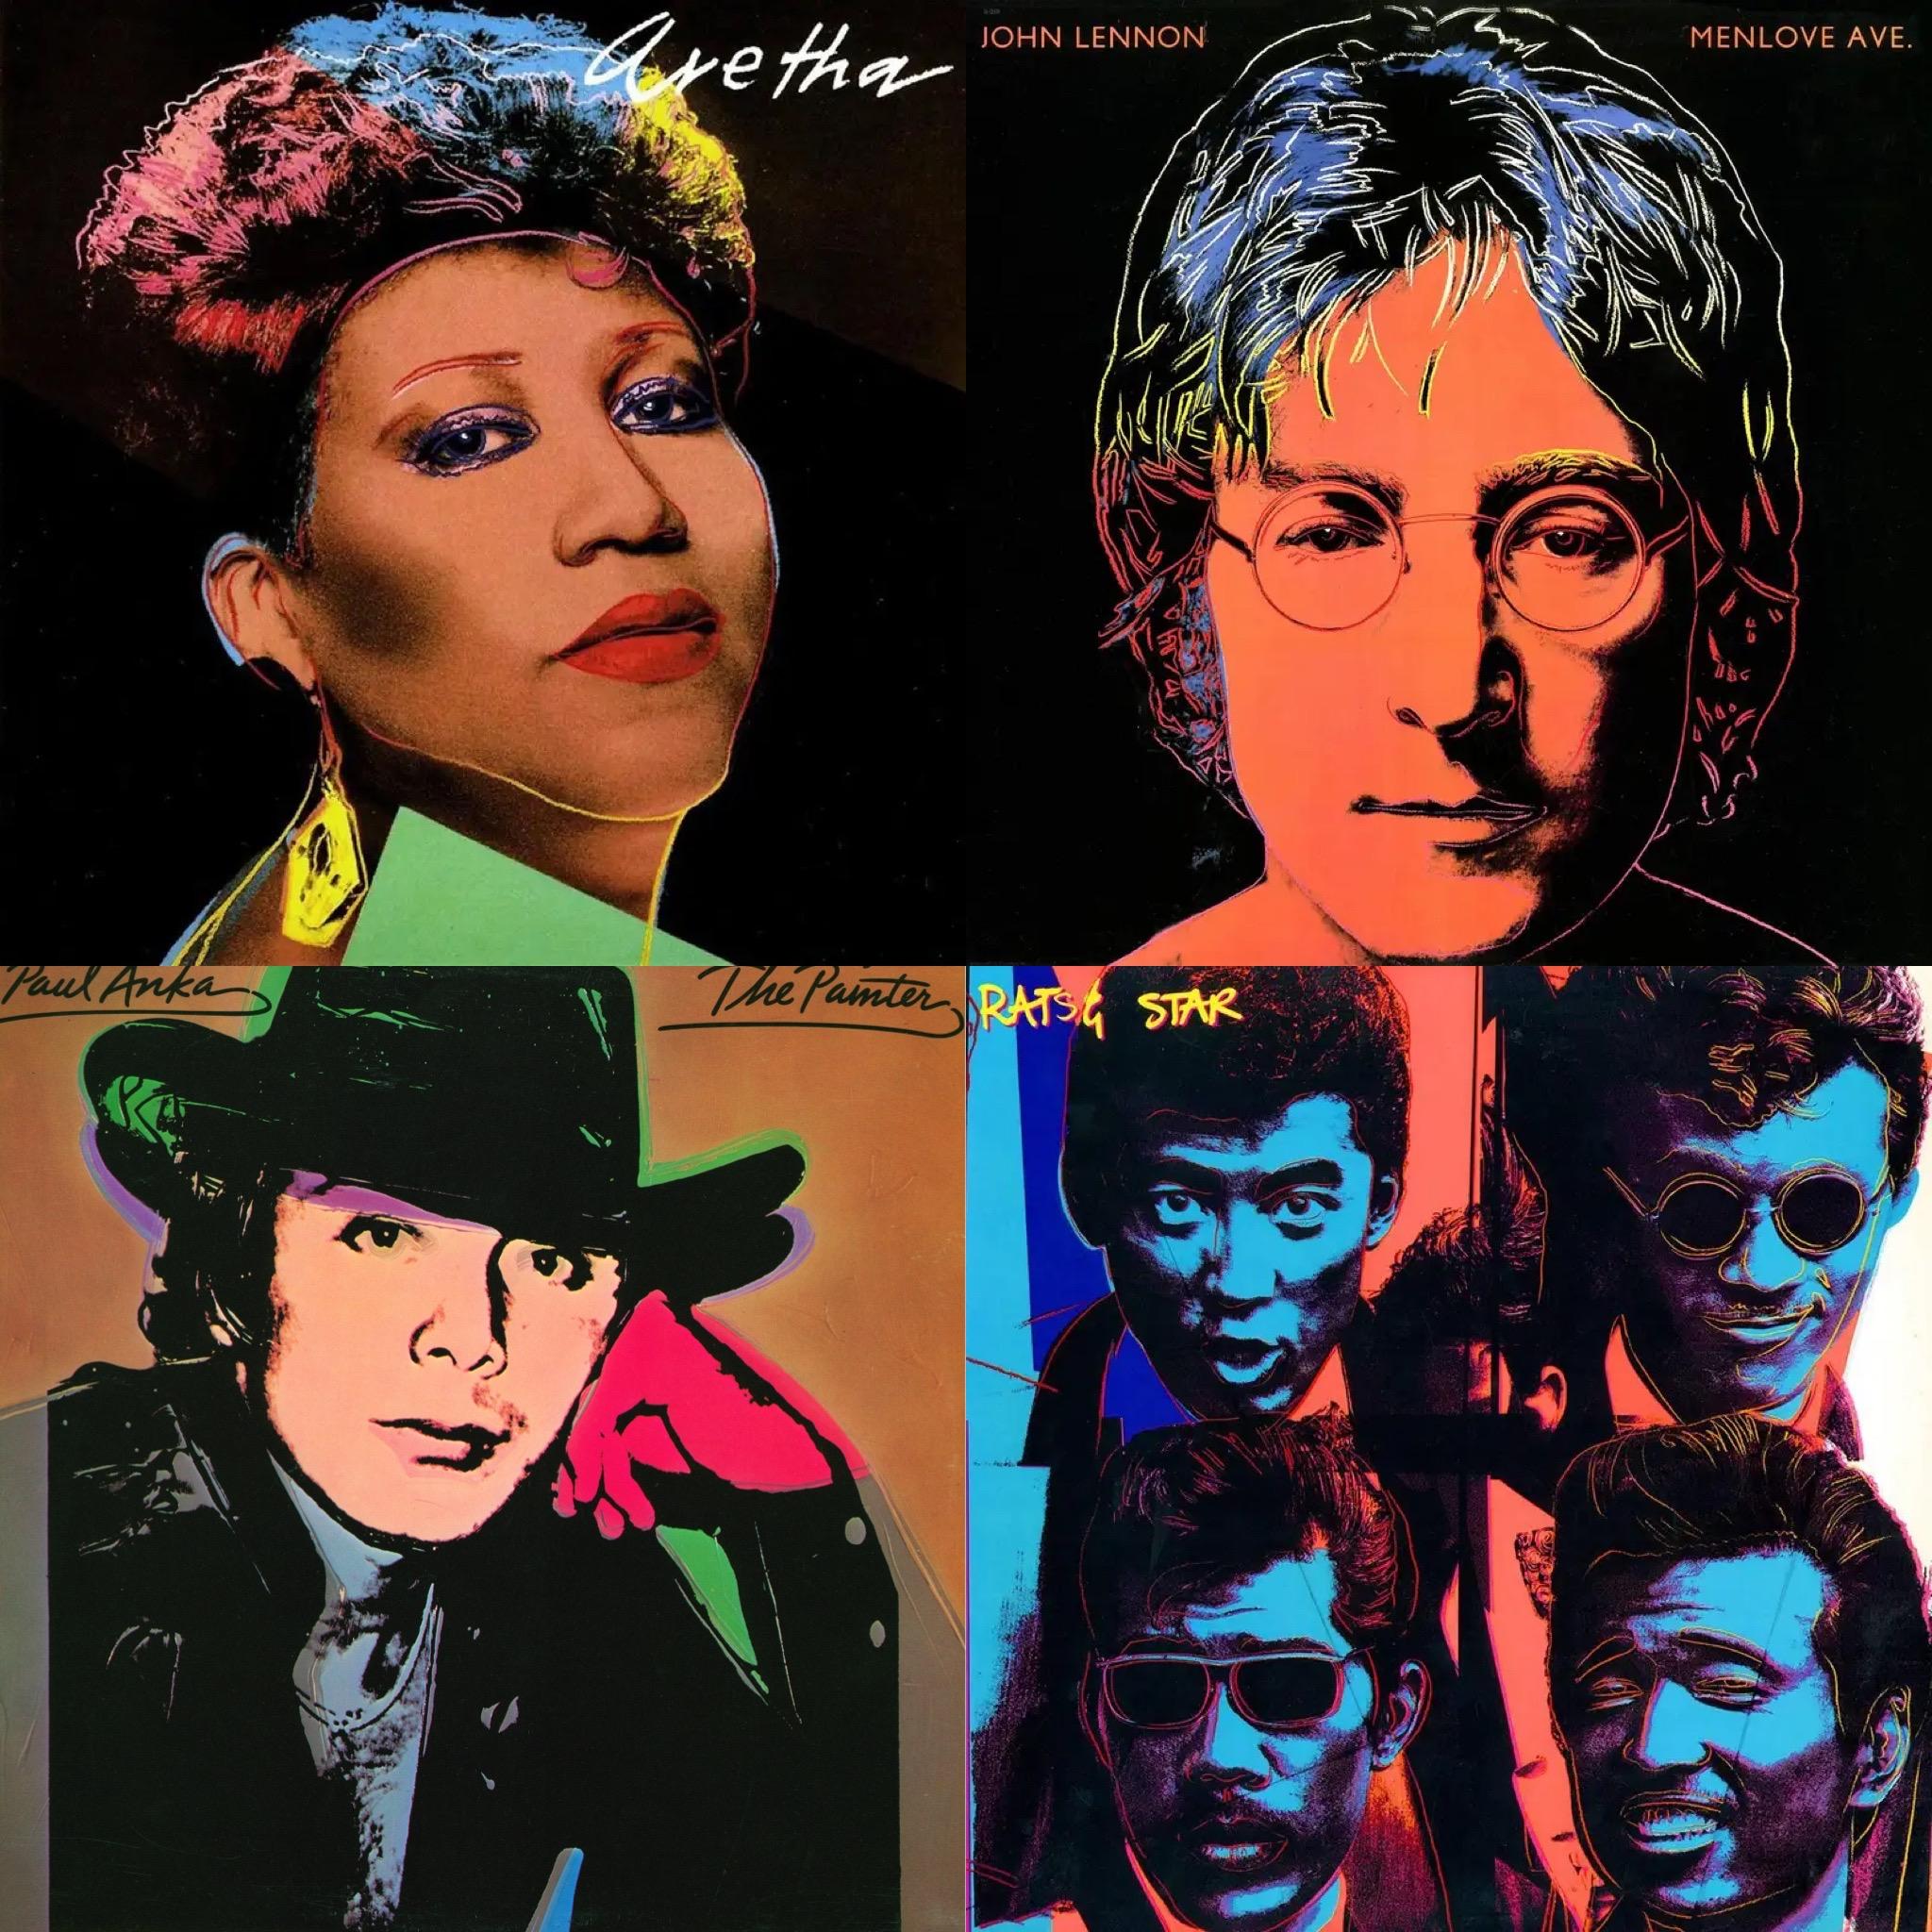 Une Collectional de 4 LPs avec des couvertures individuelles dessinées par Andy Warhol. Avec les artistes et les albums suivants :
- Aretha par Aretha Franklin
- Menlove Ave. (album de compilation) par John Lennon
- Le peintre par Paul Anka
- Soul